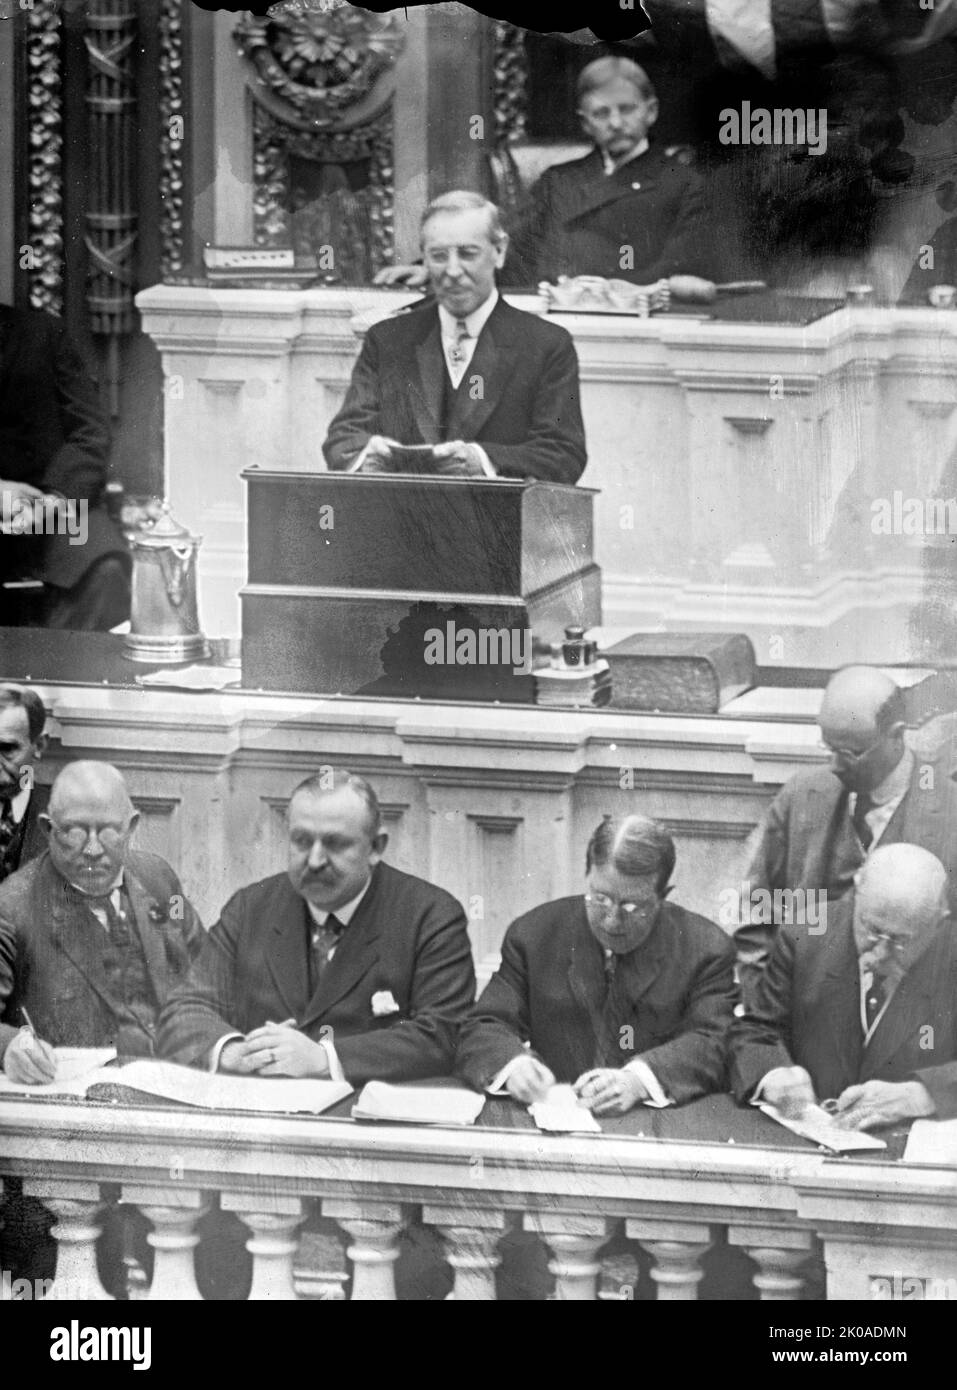 Thomas Woodrow Wilson (28 décembre 1856 - 3 février 1924) était un homme politique et universitaire américain qui a été président des États-Unis en 28th de 1913 à 1921. Membre du Parti démocratique, Wilson a modifié les politiques économiques du pays et a mené les États-Unis à la première Guerre mondiale en 1917. Il était le principal architecte de la Société des Nations, et sa position progressiste en matière de politique étrangère est connue sous le nom de Wilsonianisme Banque D'Images